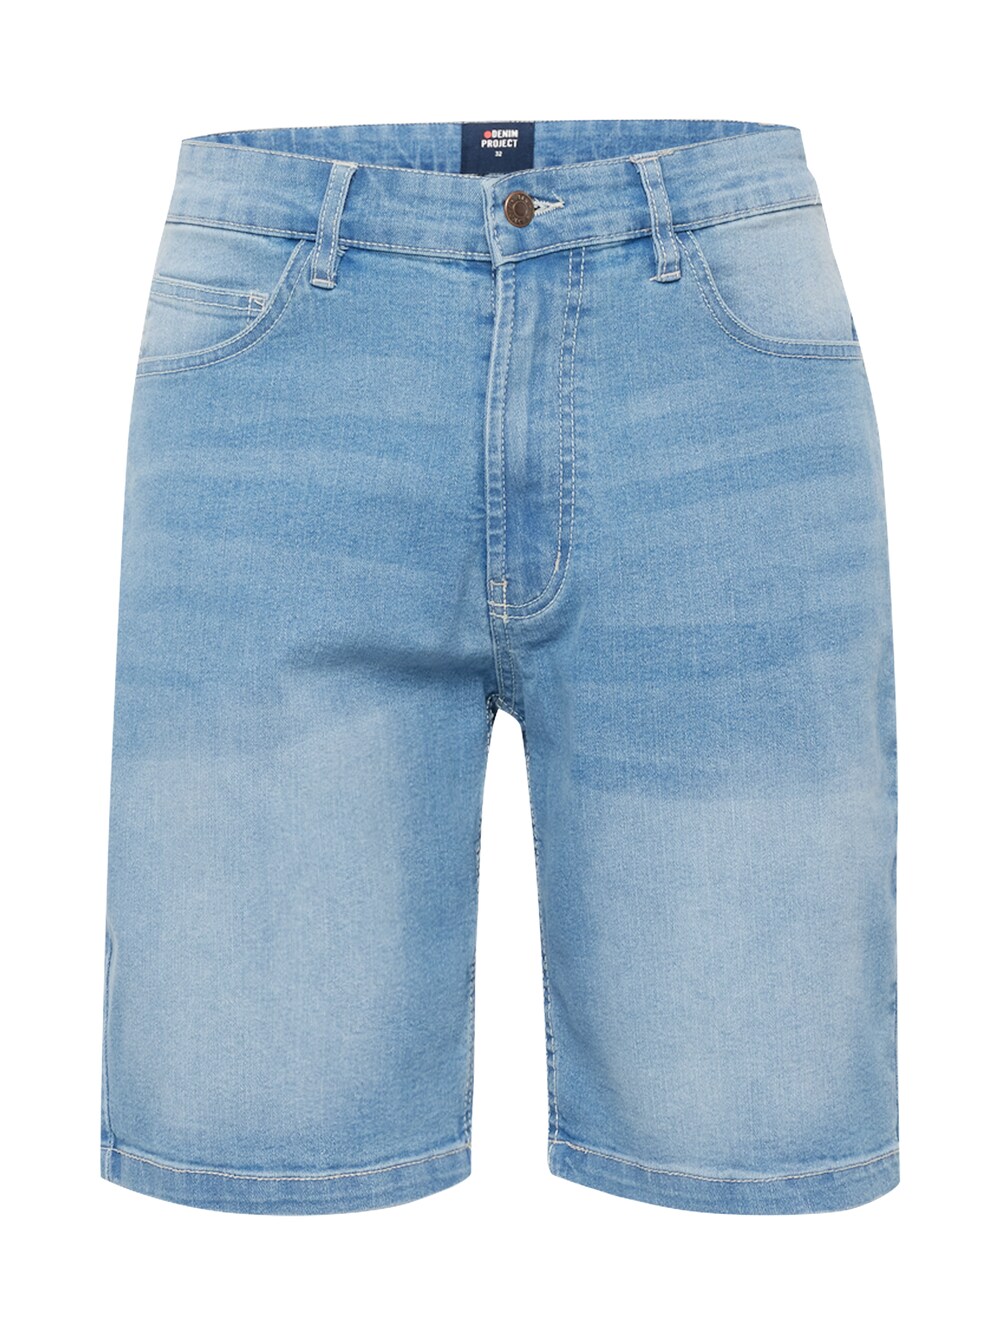 Обычные джинсы Denim Project, светло-синий